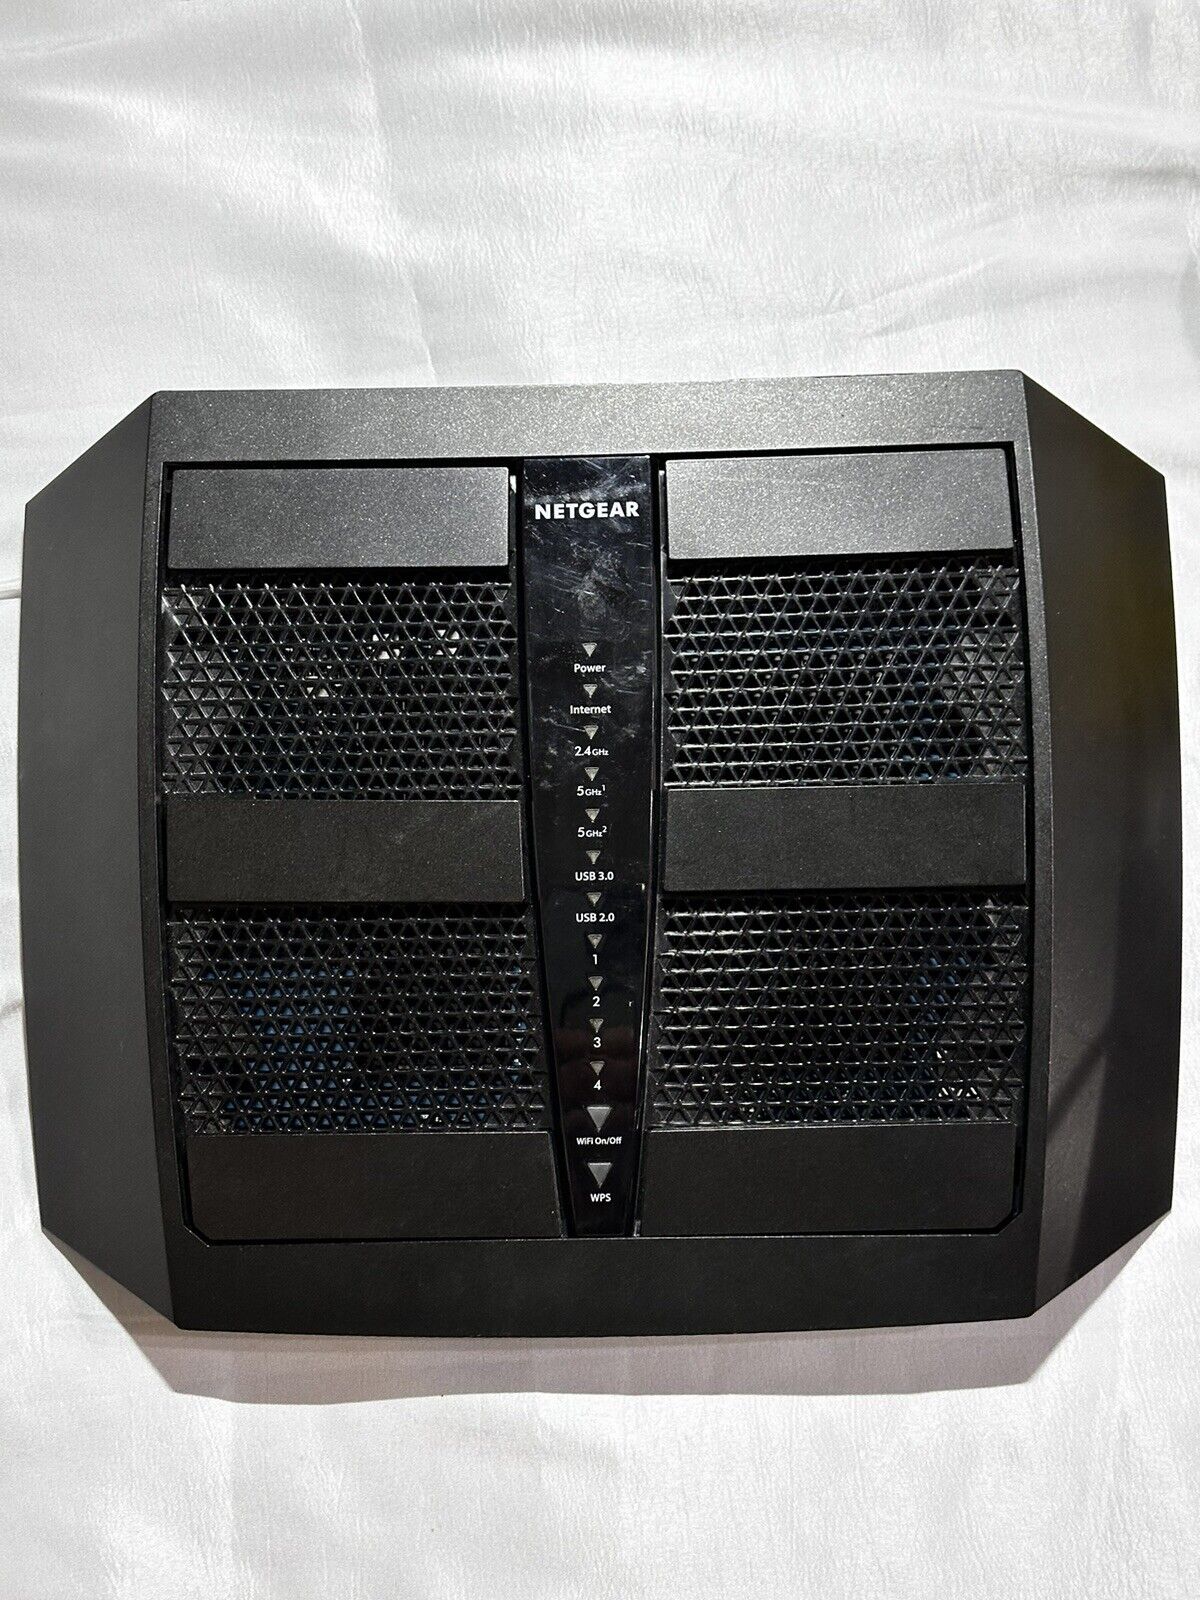 NETGEAR NIGHTHAWK X6 AC3200 Tri-Band WiFi Router Model R8000 - 3.2Gbps